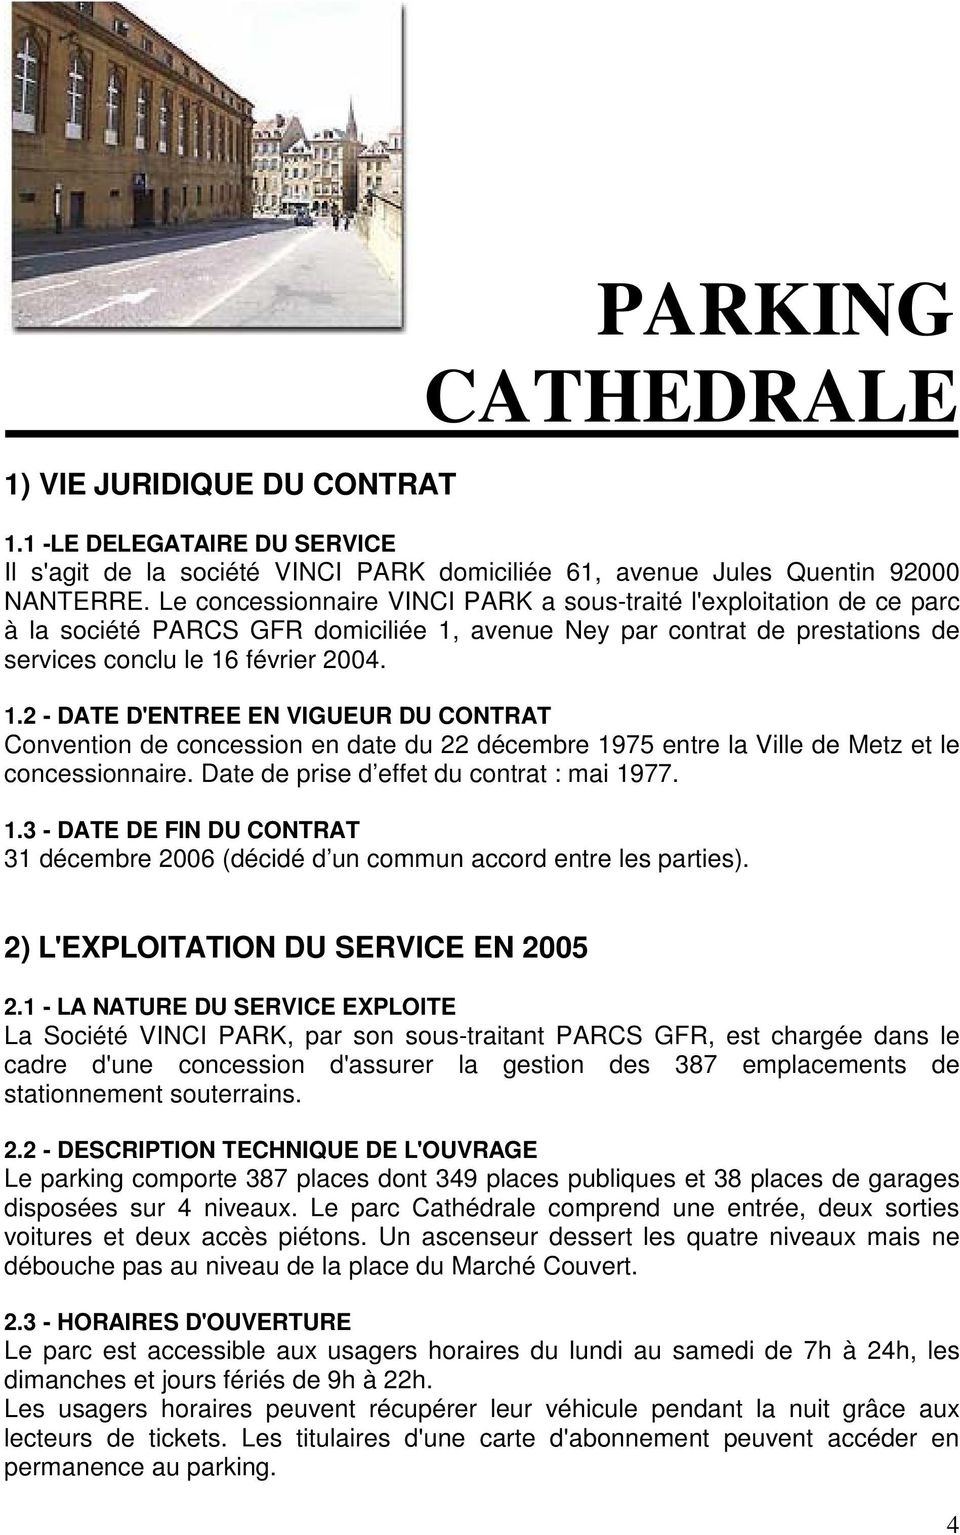 avenue Ney par contrat de prestations de services conclu le 16 février 2004. 1.2 - DATE D'ENTREE EN VIGUEUR DU CONTRAT Convention de concession en date du 22 décembre 1975 entre la Ville de Metz et le concessionnaire.